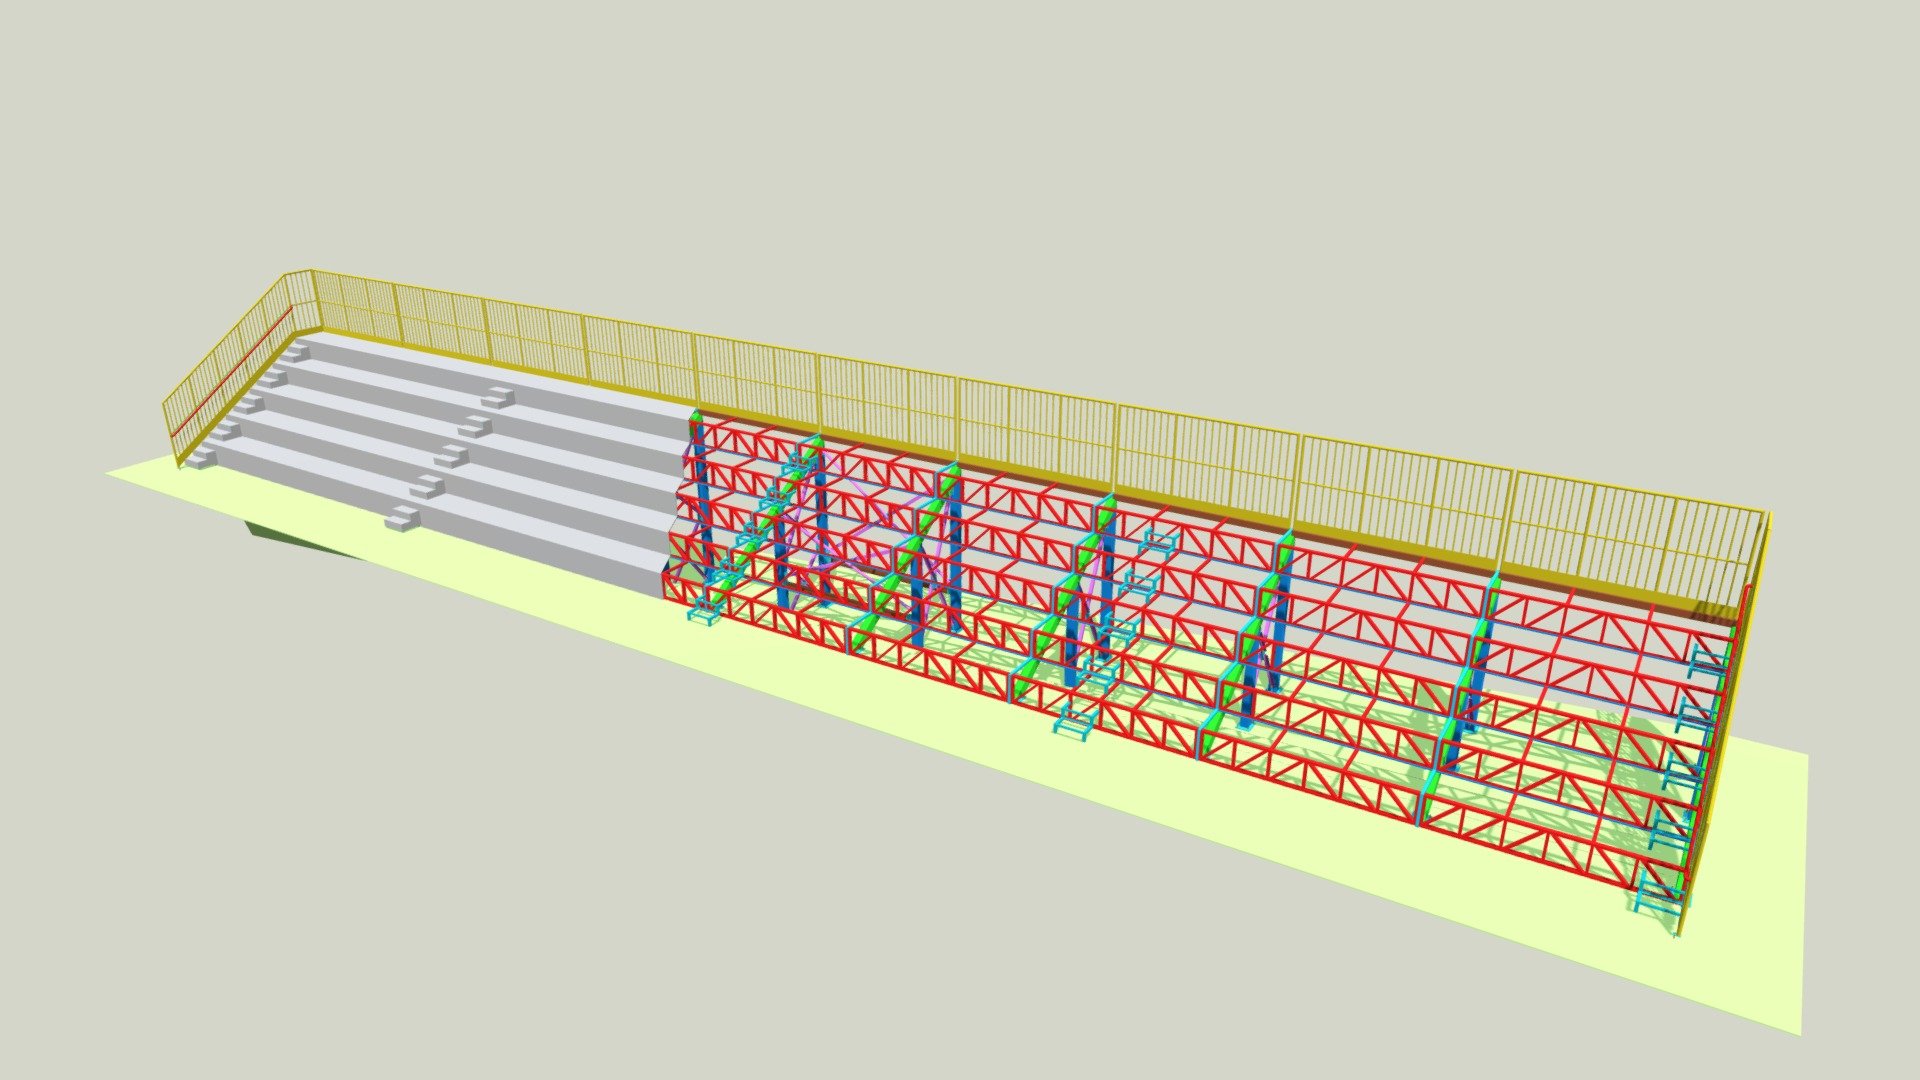 Arquibancada metálica para campo

Dados técnicos:

Área: ≅ 143m²

Peso da estrutura: ≅ 6,5 toneladas

Taxa de aço: ≅ 46,2 kg/m² - AC27 - 3D model by Rafael Mendes (@rafaelmdens) 3d model